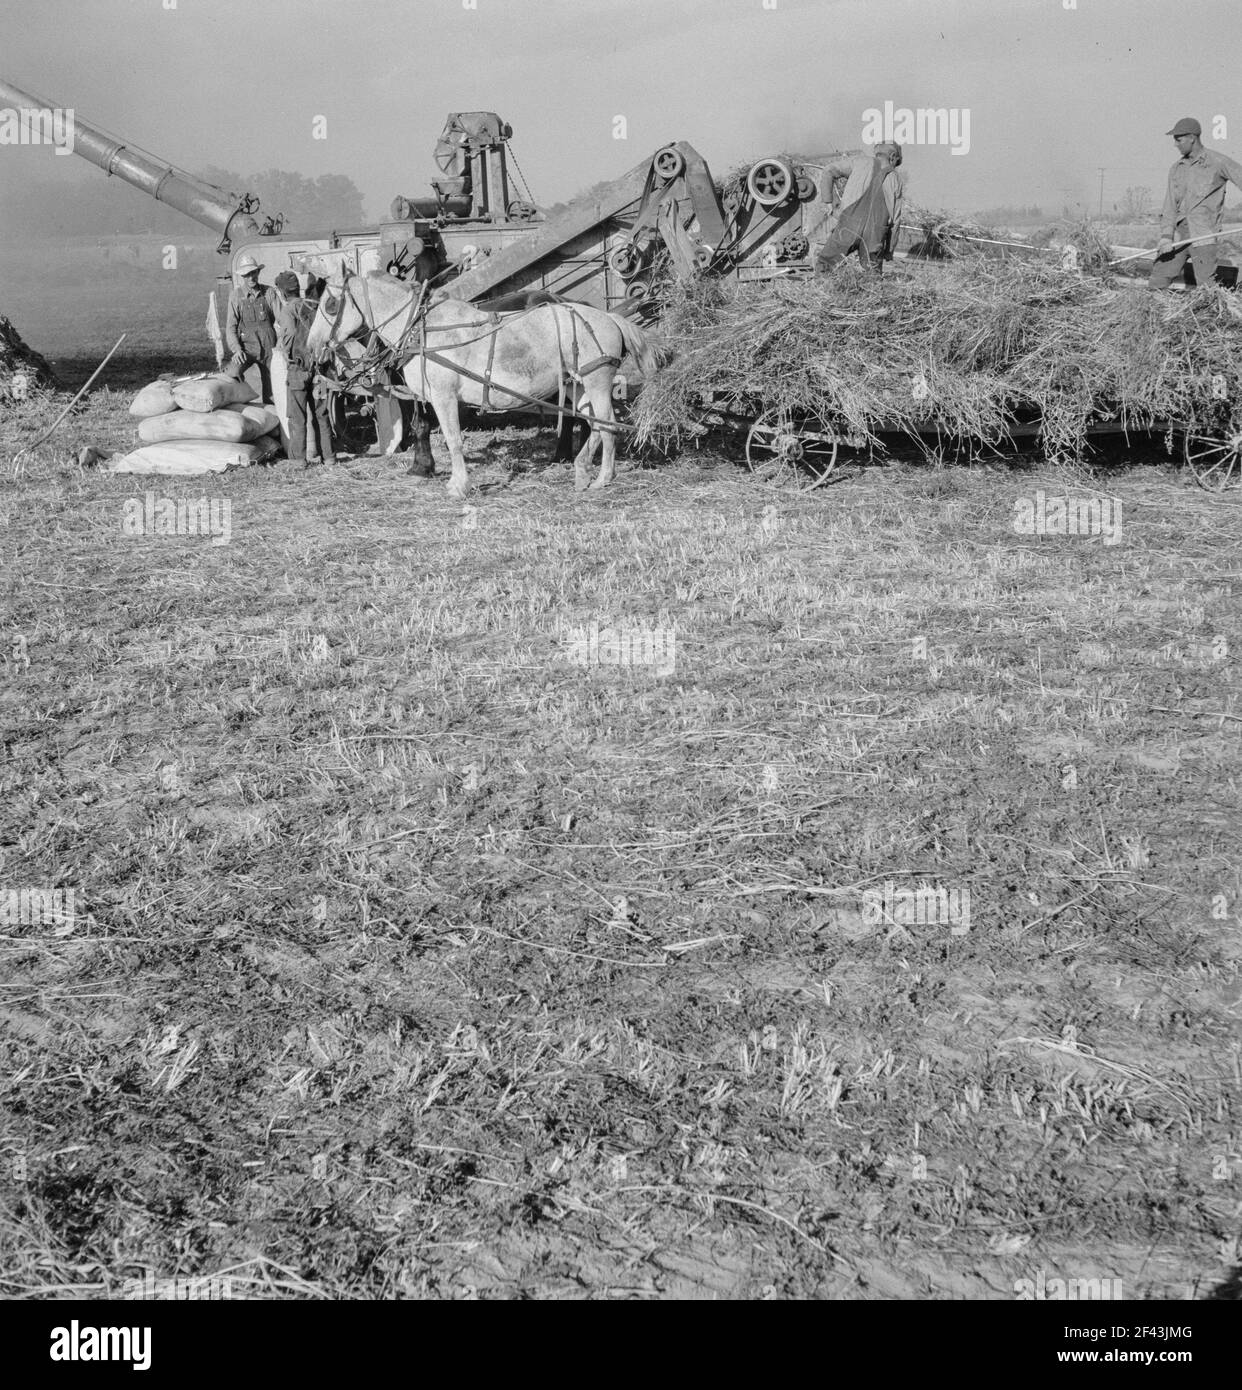 Dreschen von Rotklee für Samen auf der Ranch der älteren Siedler. In Der Nähe Von Ontario, Malheur County, Oregon. Oktober 1939. Foto von Dorothea lange. Stockfoto